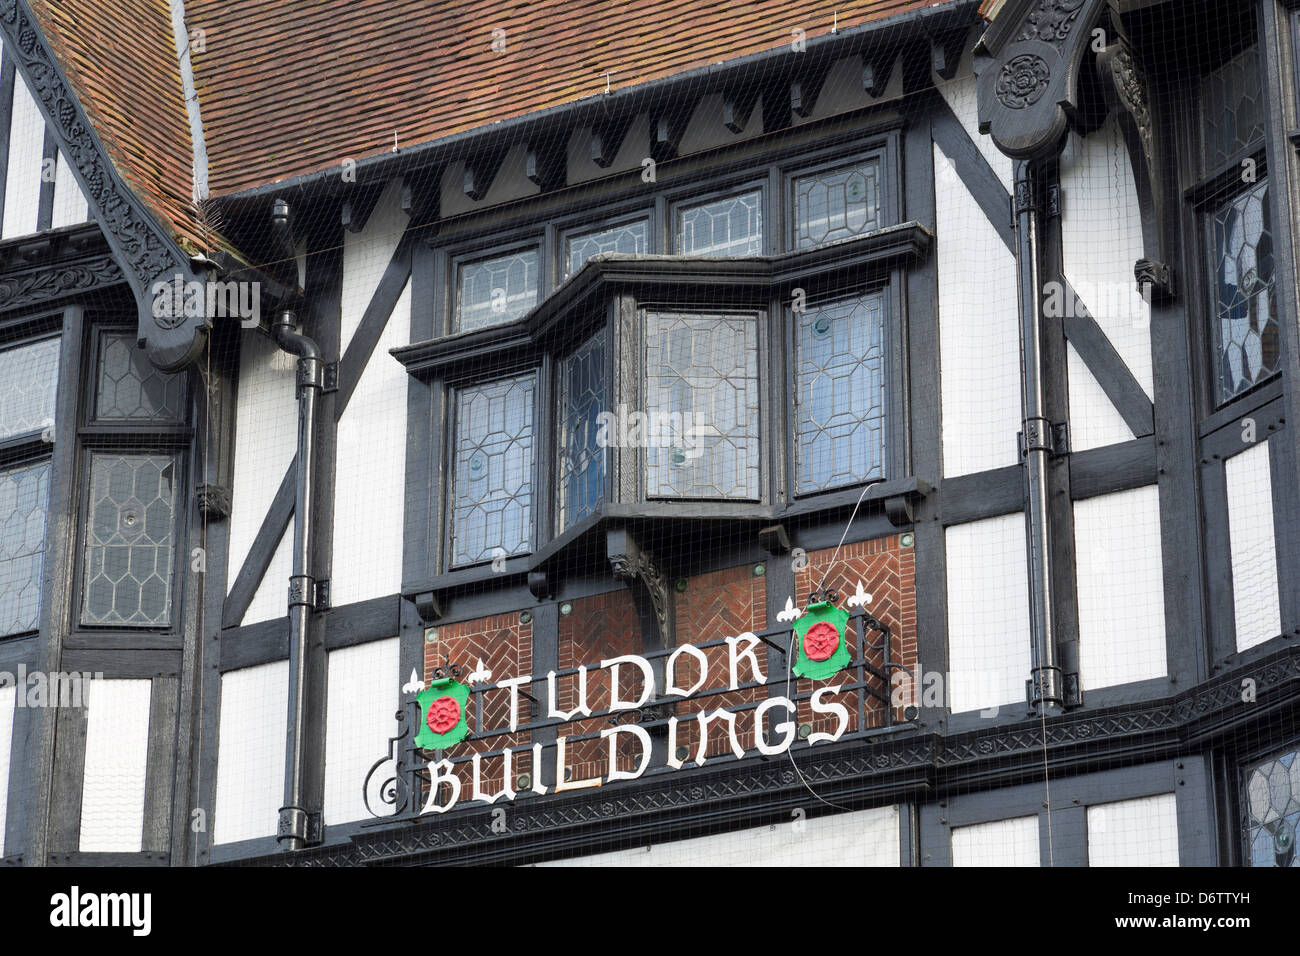 Bâtiment Tudor sur High Street, Southampton, comté de Hampshire, Angleterre, Royaume-Uni Banque D'Images